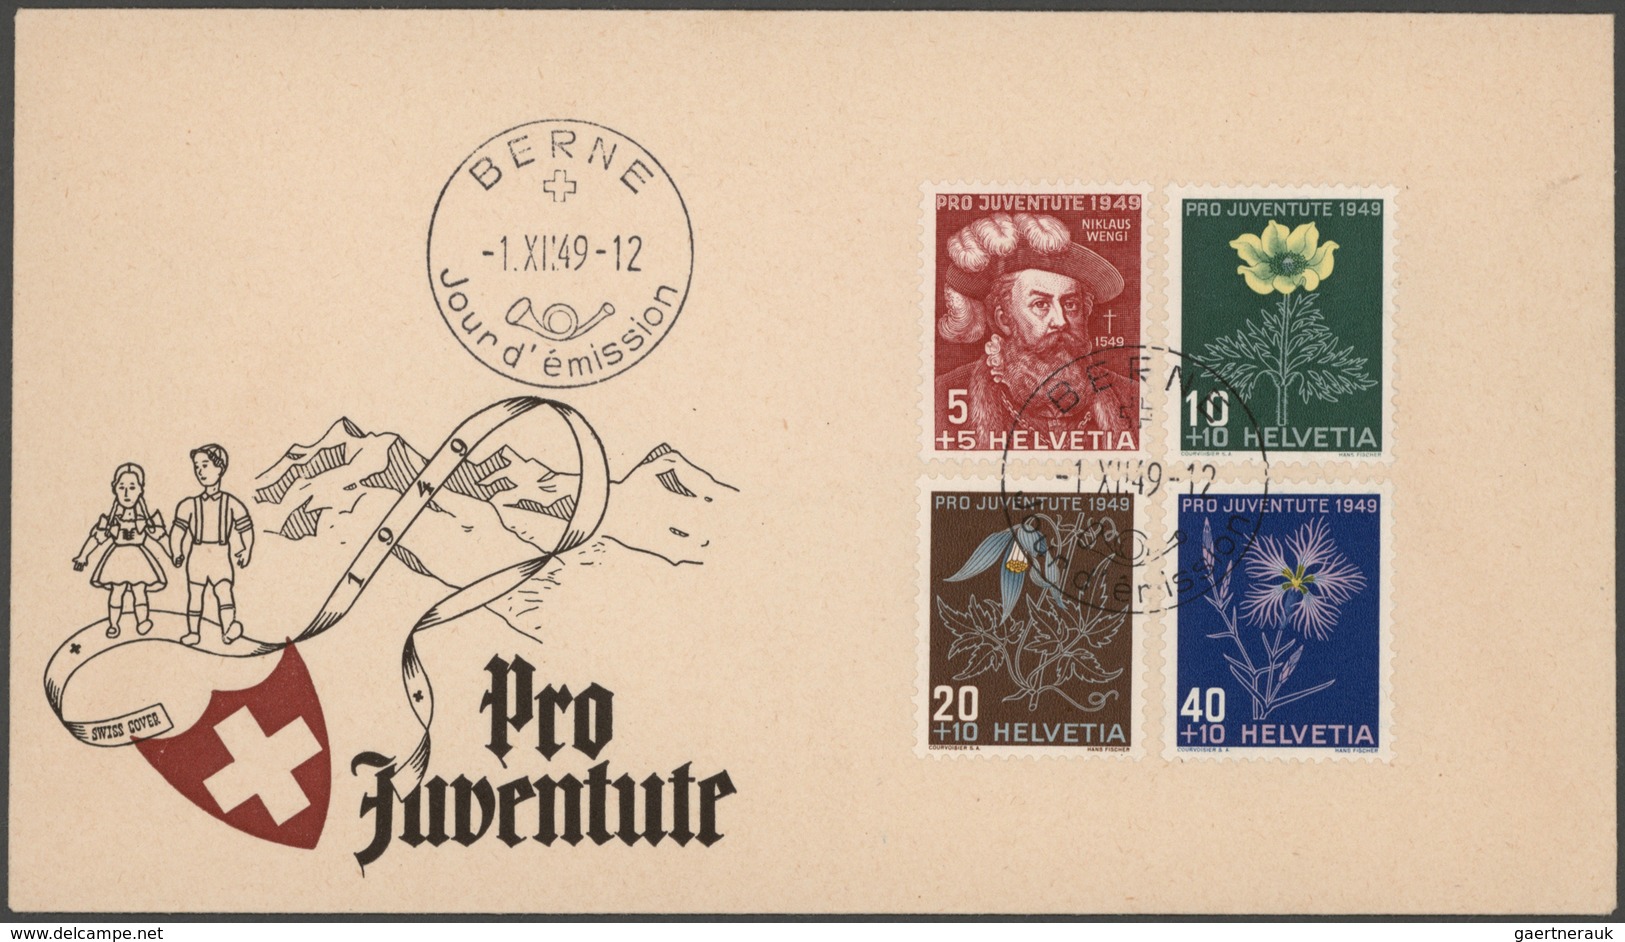 Schweiz: 1860/1990 (ca.), vielseitige Partie von ca. 370 Briefen, Karten und Gansachen, dabei zahlre